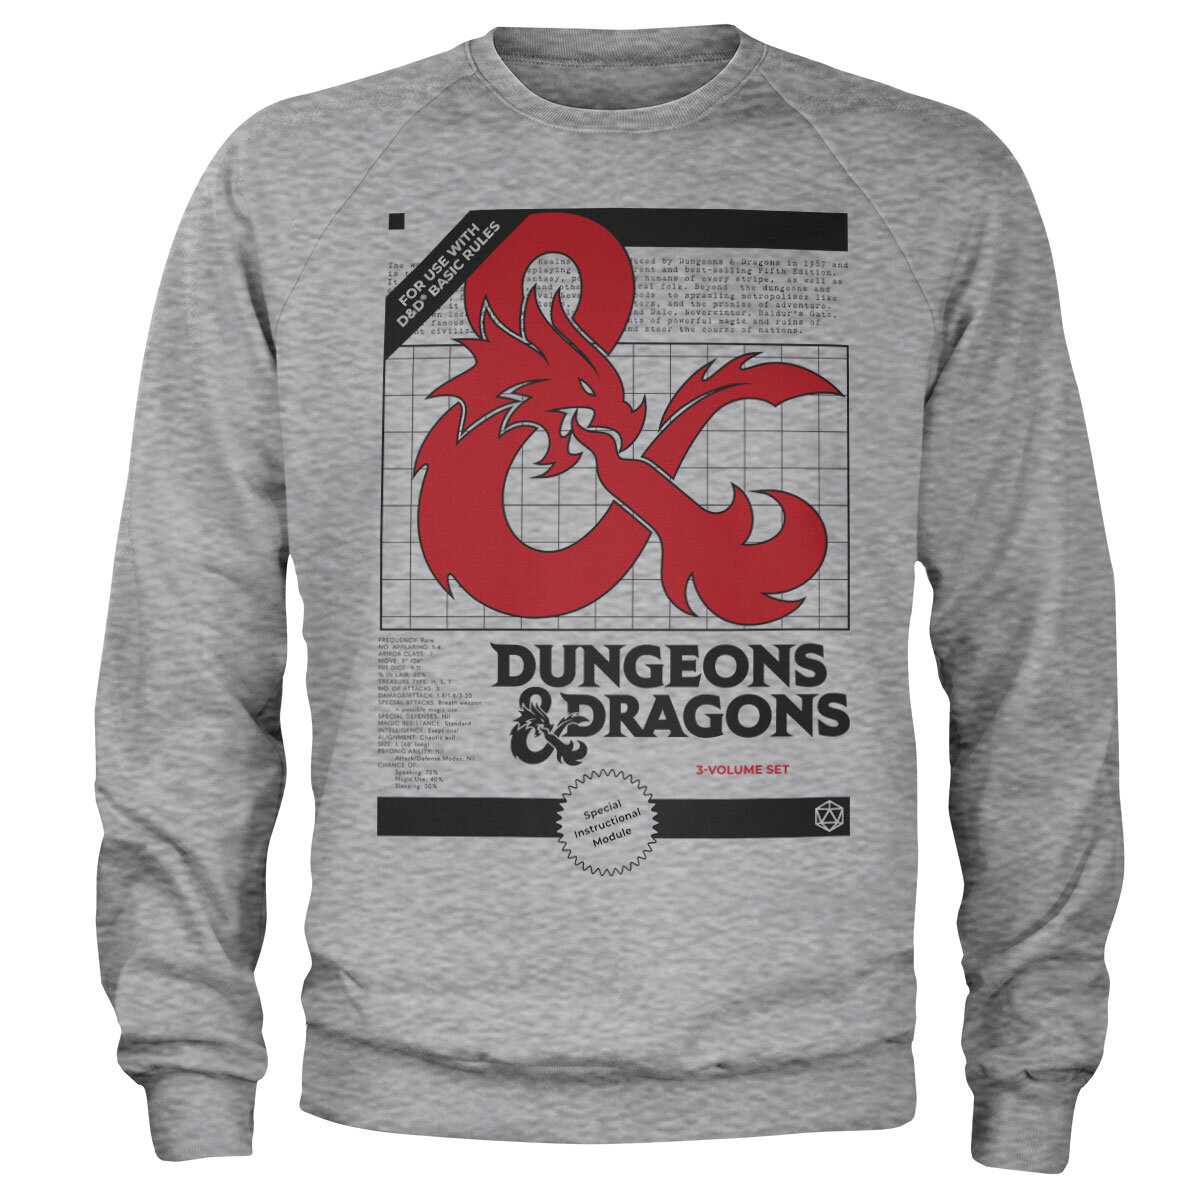 Dungeons & Dragons - 3 Volume Set Sweatshirt